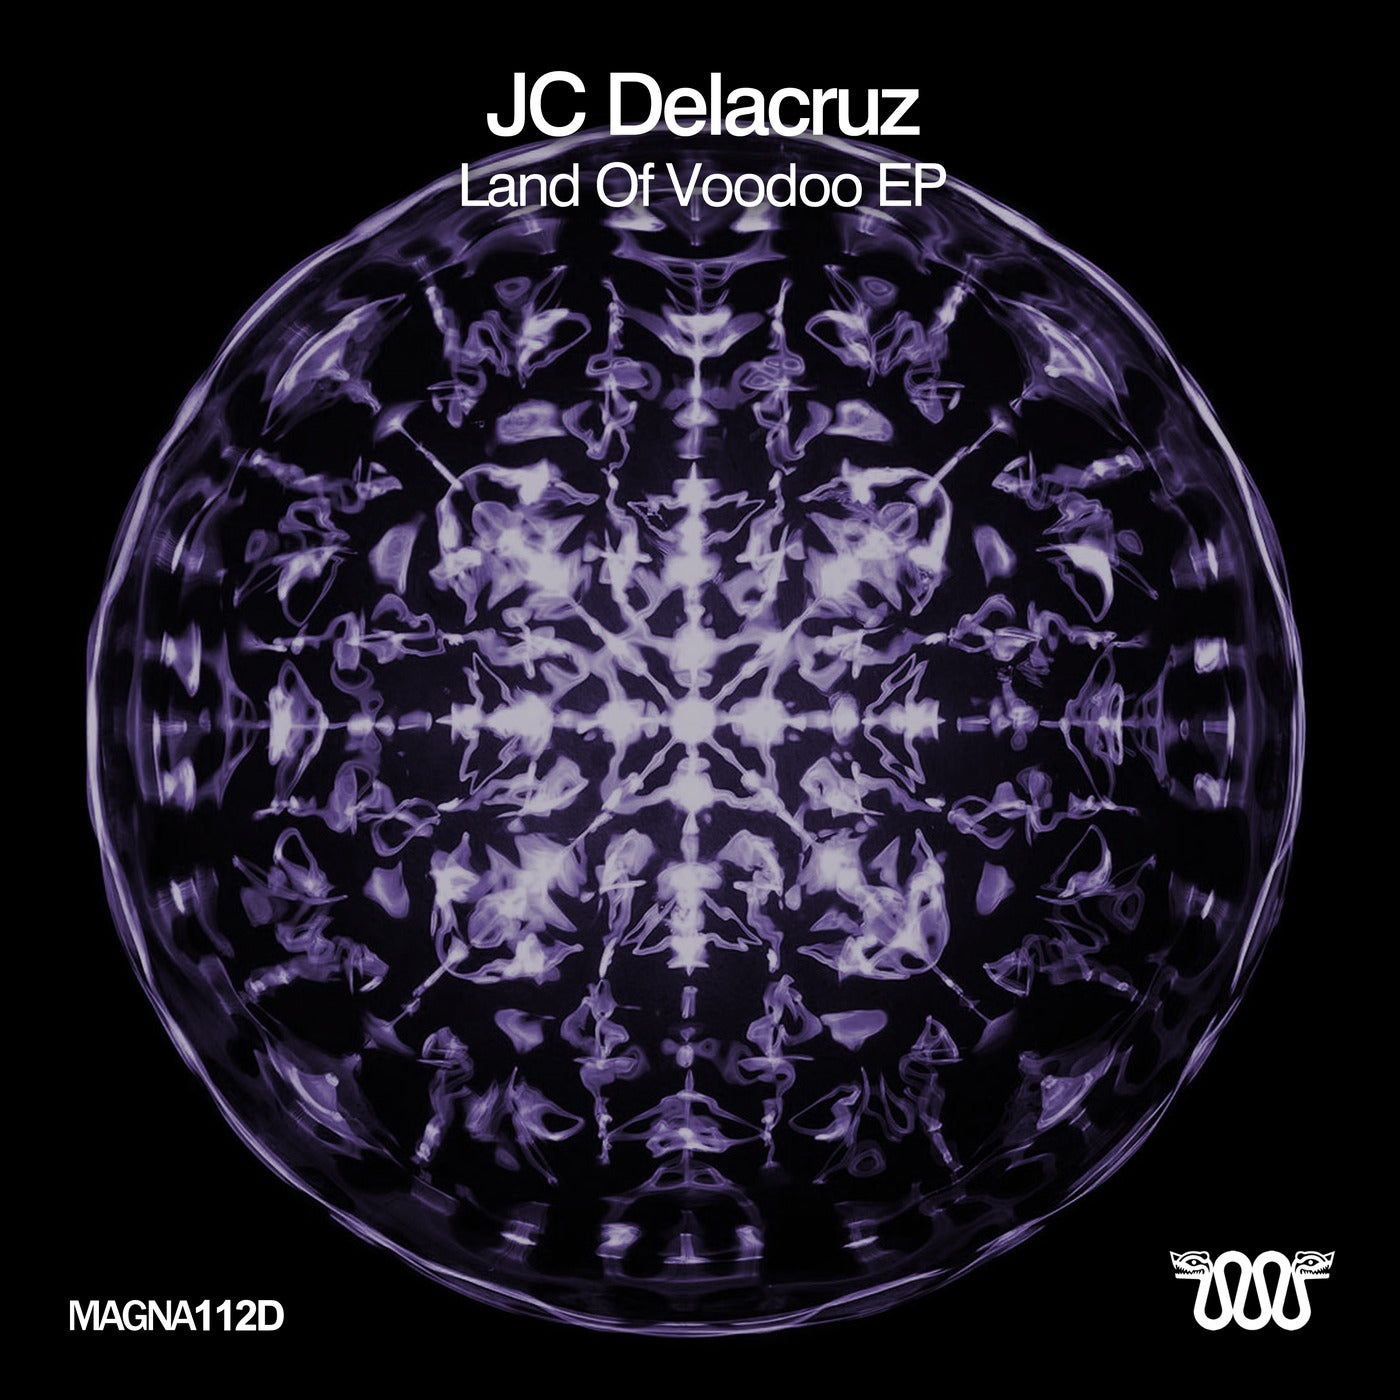 JC Delacruz - Land Of Voodoo EP [MAGNA112D]